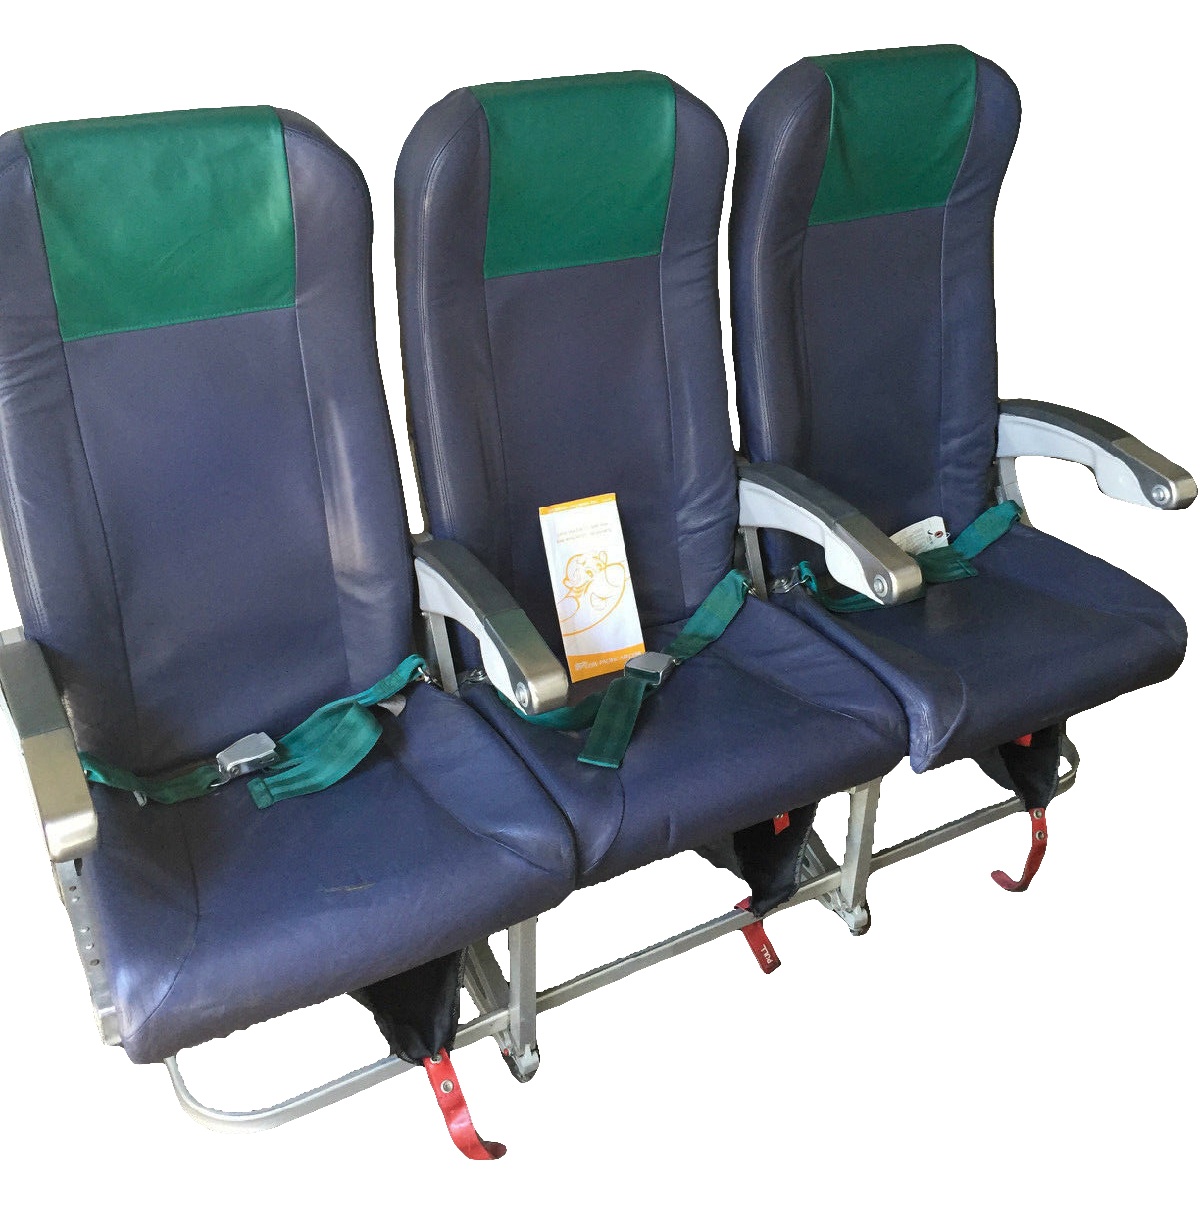 A319 Cebu Pacific Economy Class Seats Front